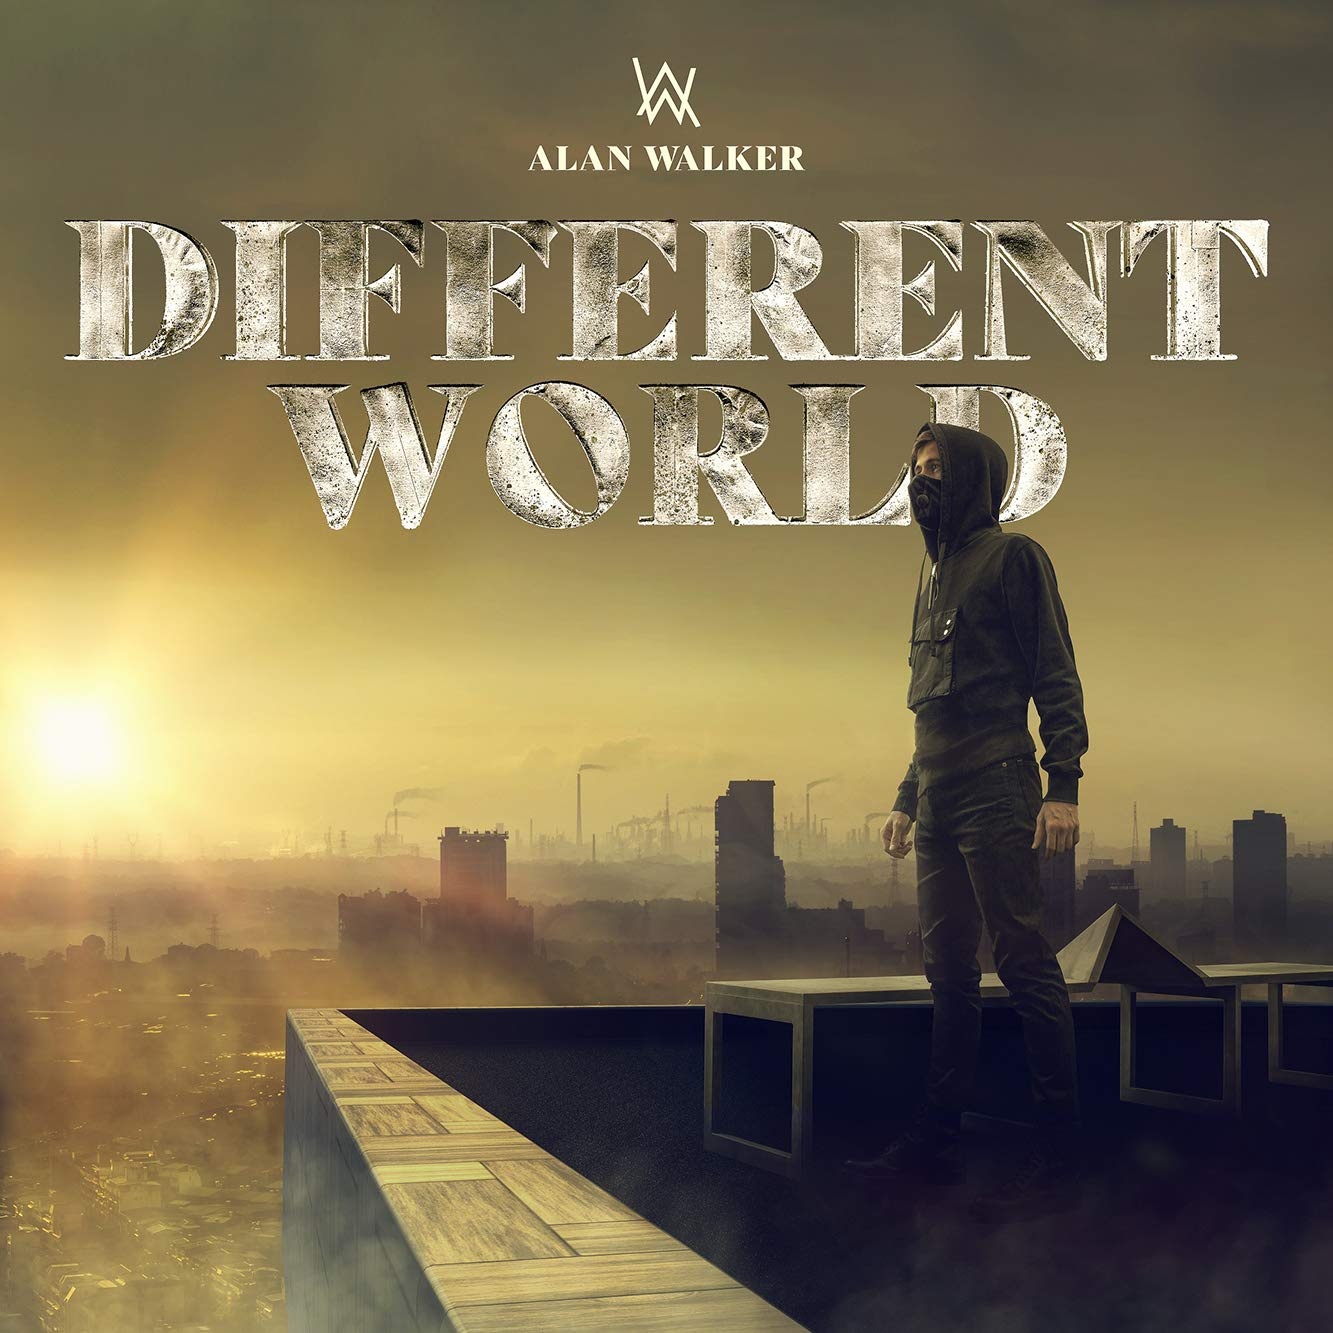 Alan Walker - Different World (2018)